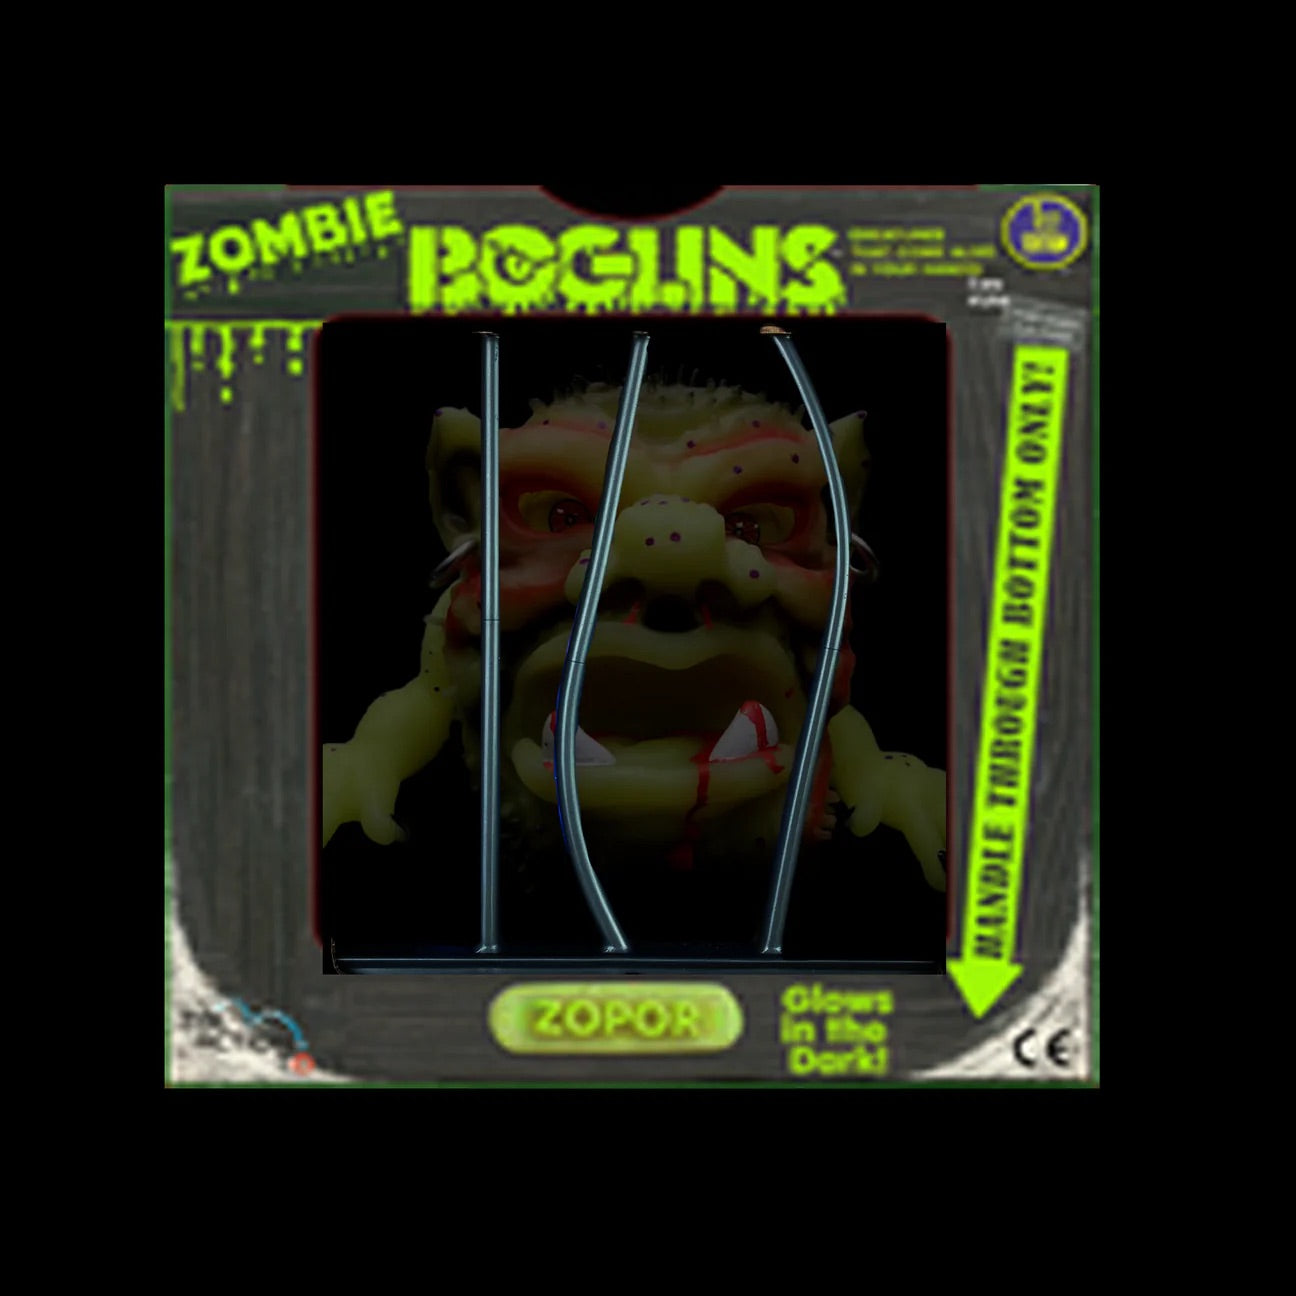 Boglins Zombie Zopor in Cage